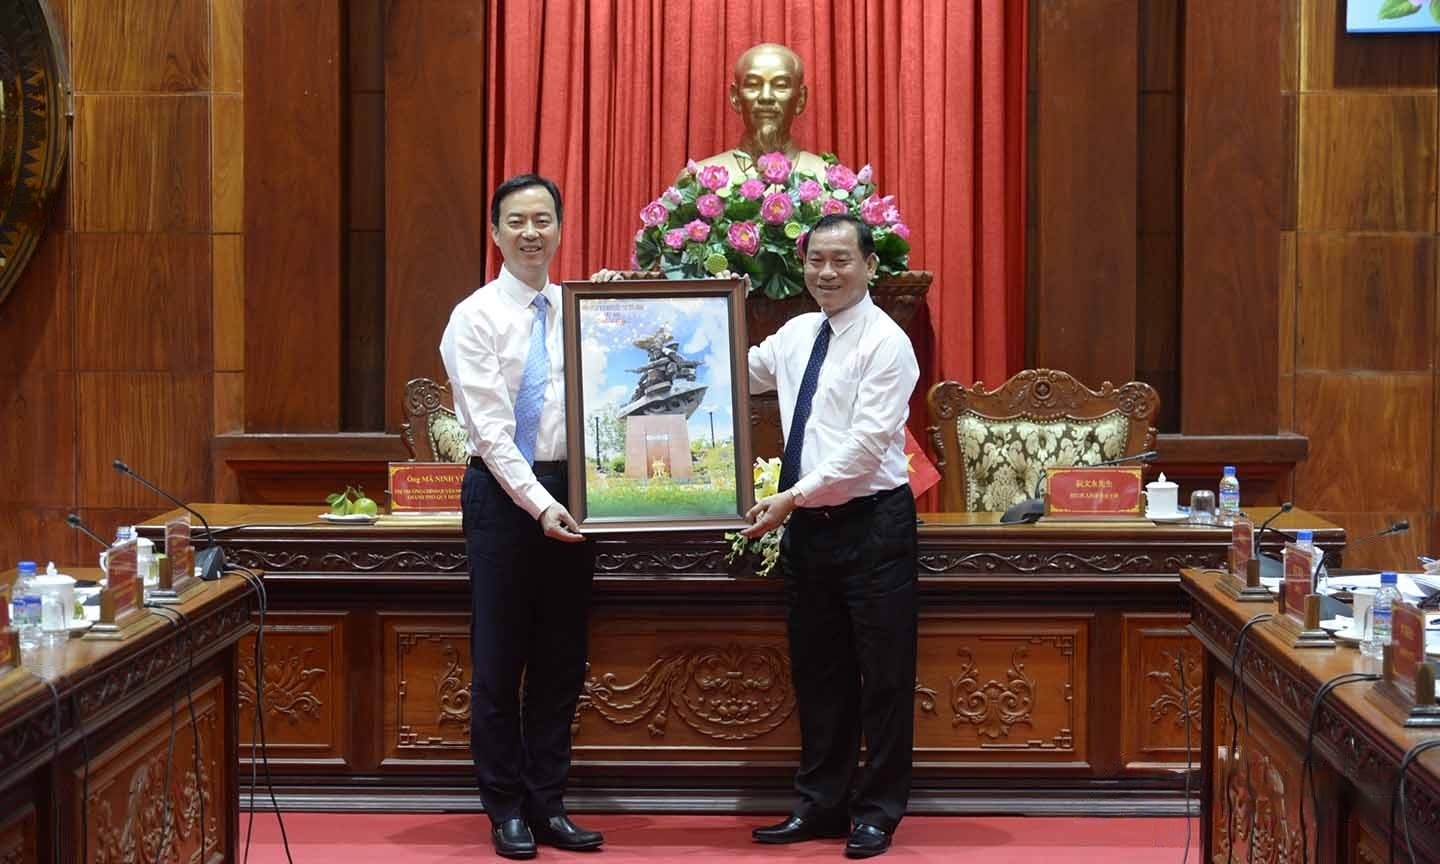 前江省人民委员会主席阮文永向贵阳市市长马宁宇赠送留念品。